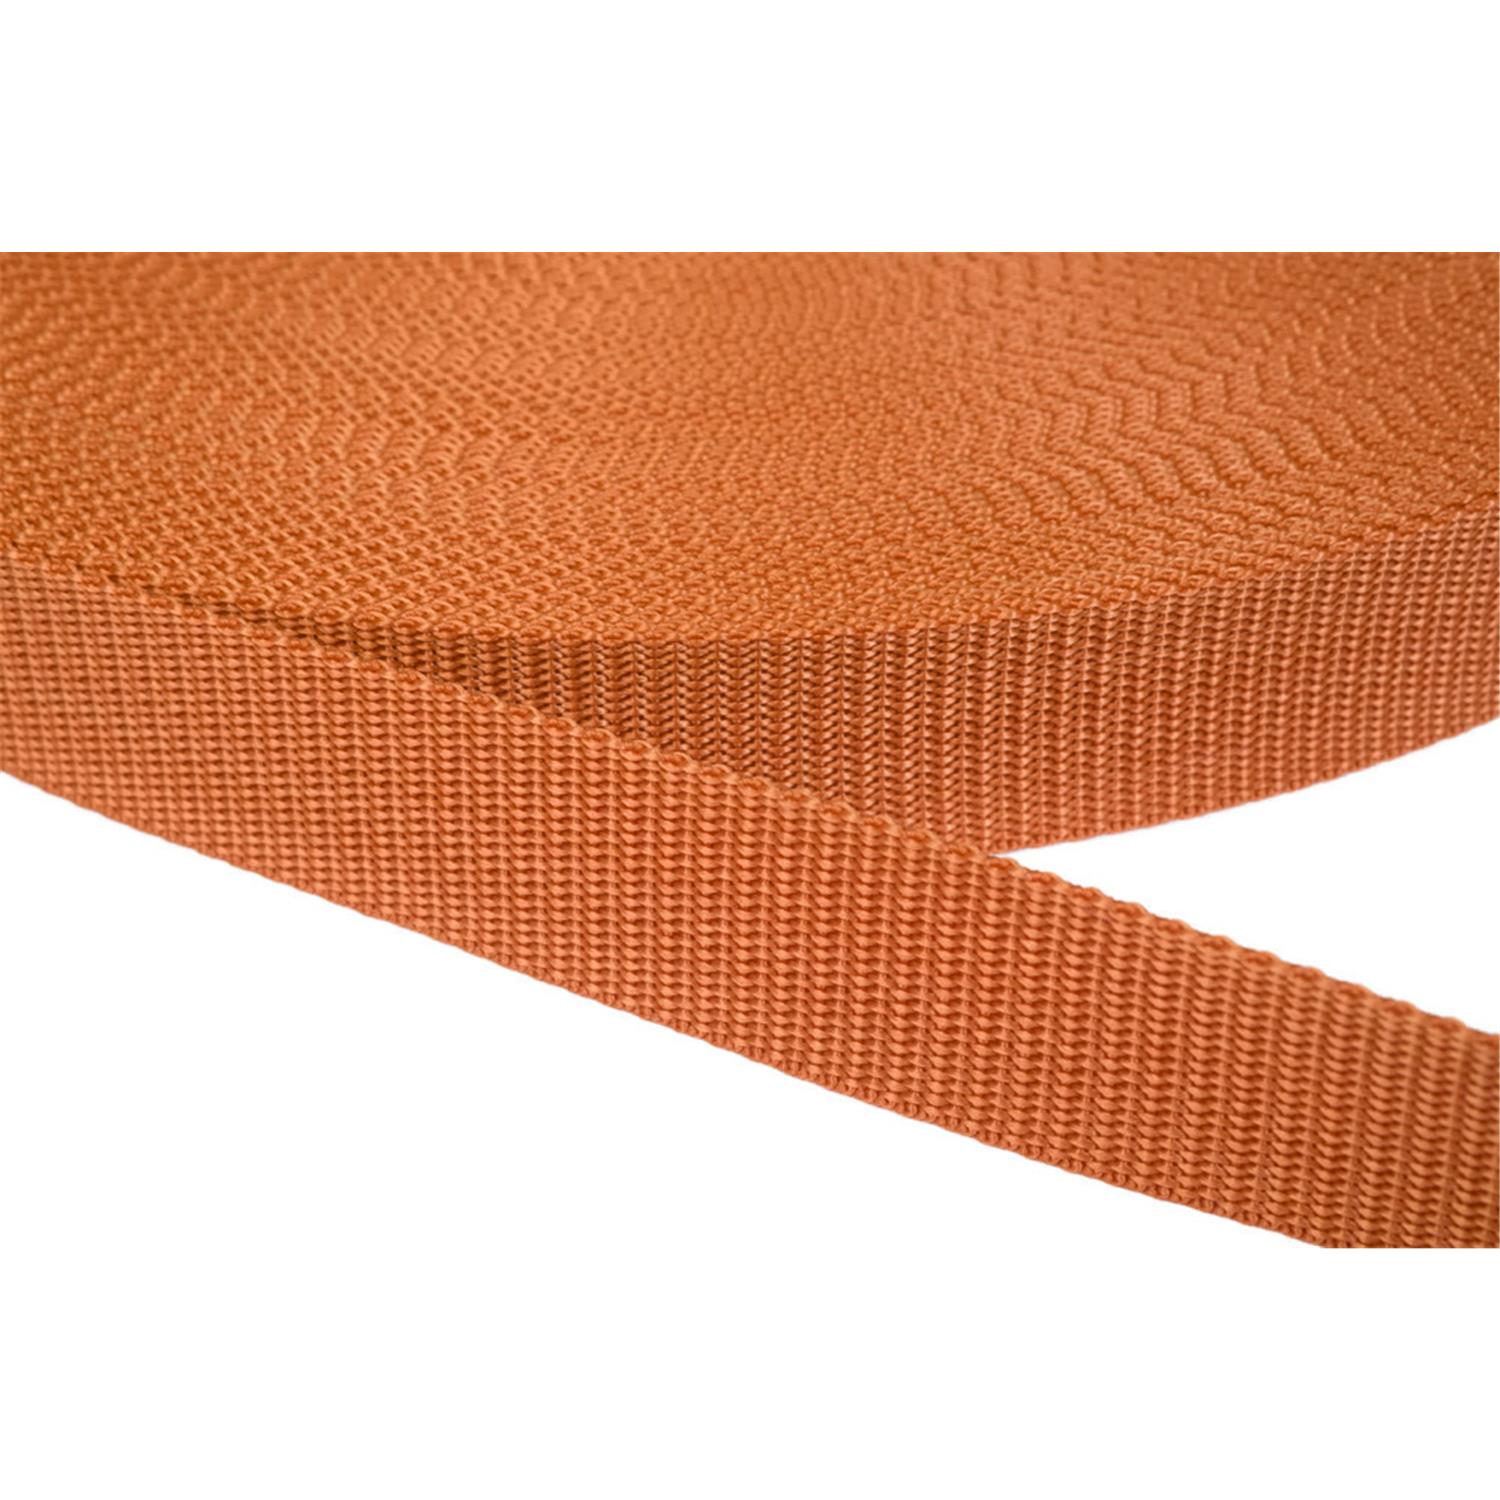 Gurtband 15mm breit aus Polypropylen in 41 Farben 05 - ockerbraun 12 Meter